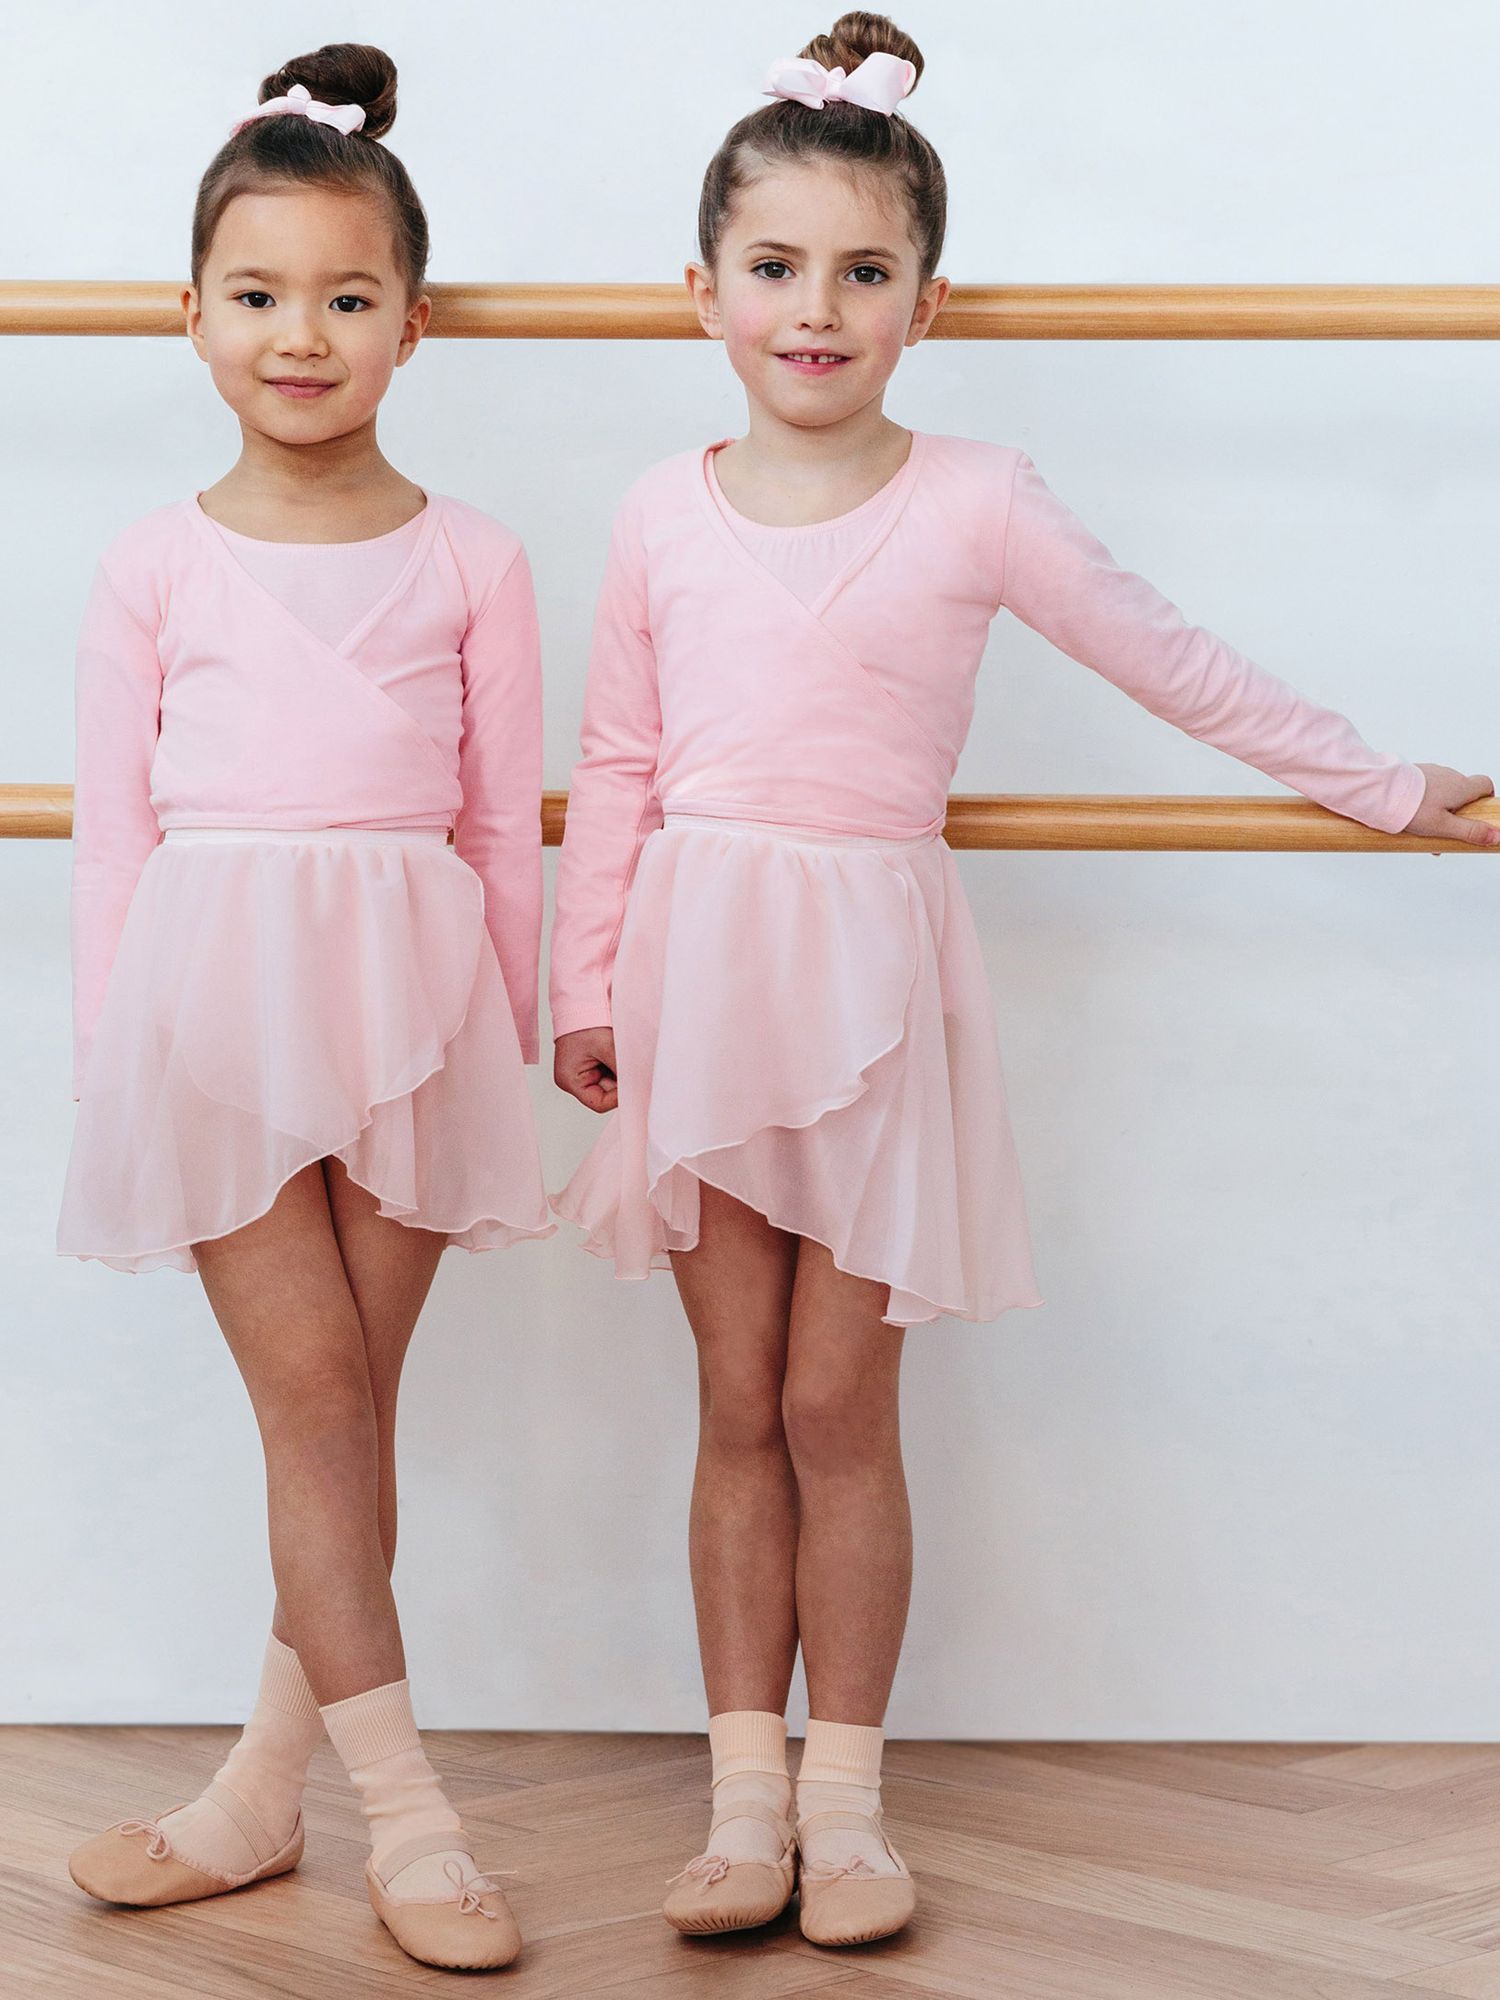 Winter Thermal Underwear Sets For Kids Gymnastics Ballet Dance